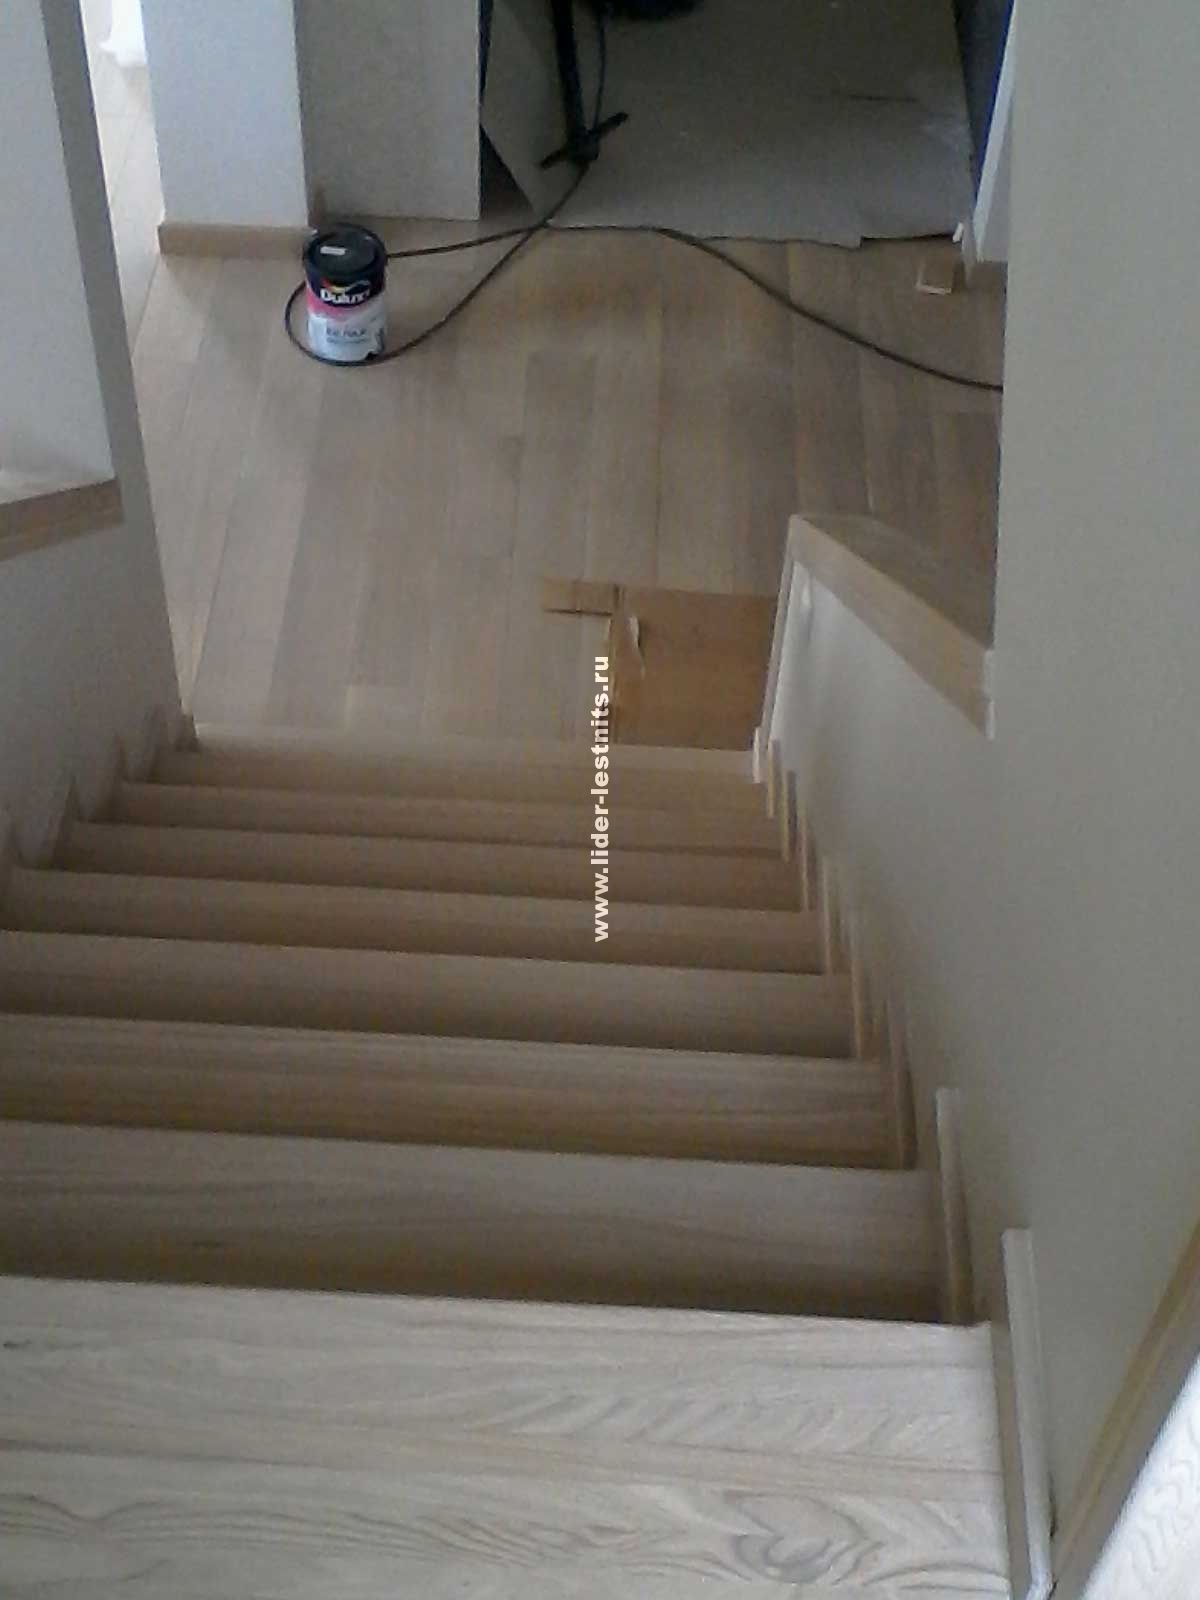 Отделка бетонной лестницы деревом: пошаговая отделка бетонных лестниц деревом в частном доме с фото инструкциями